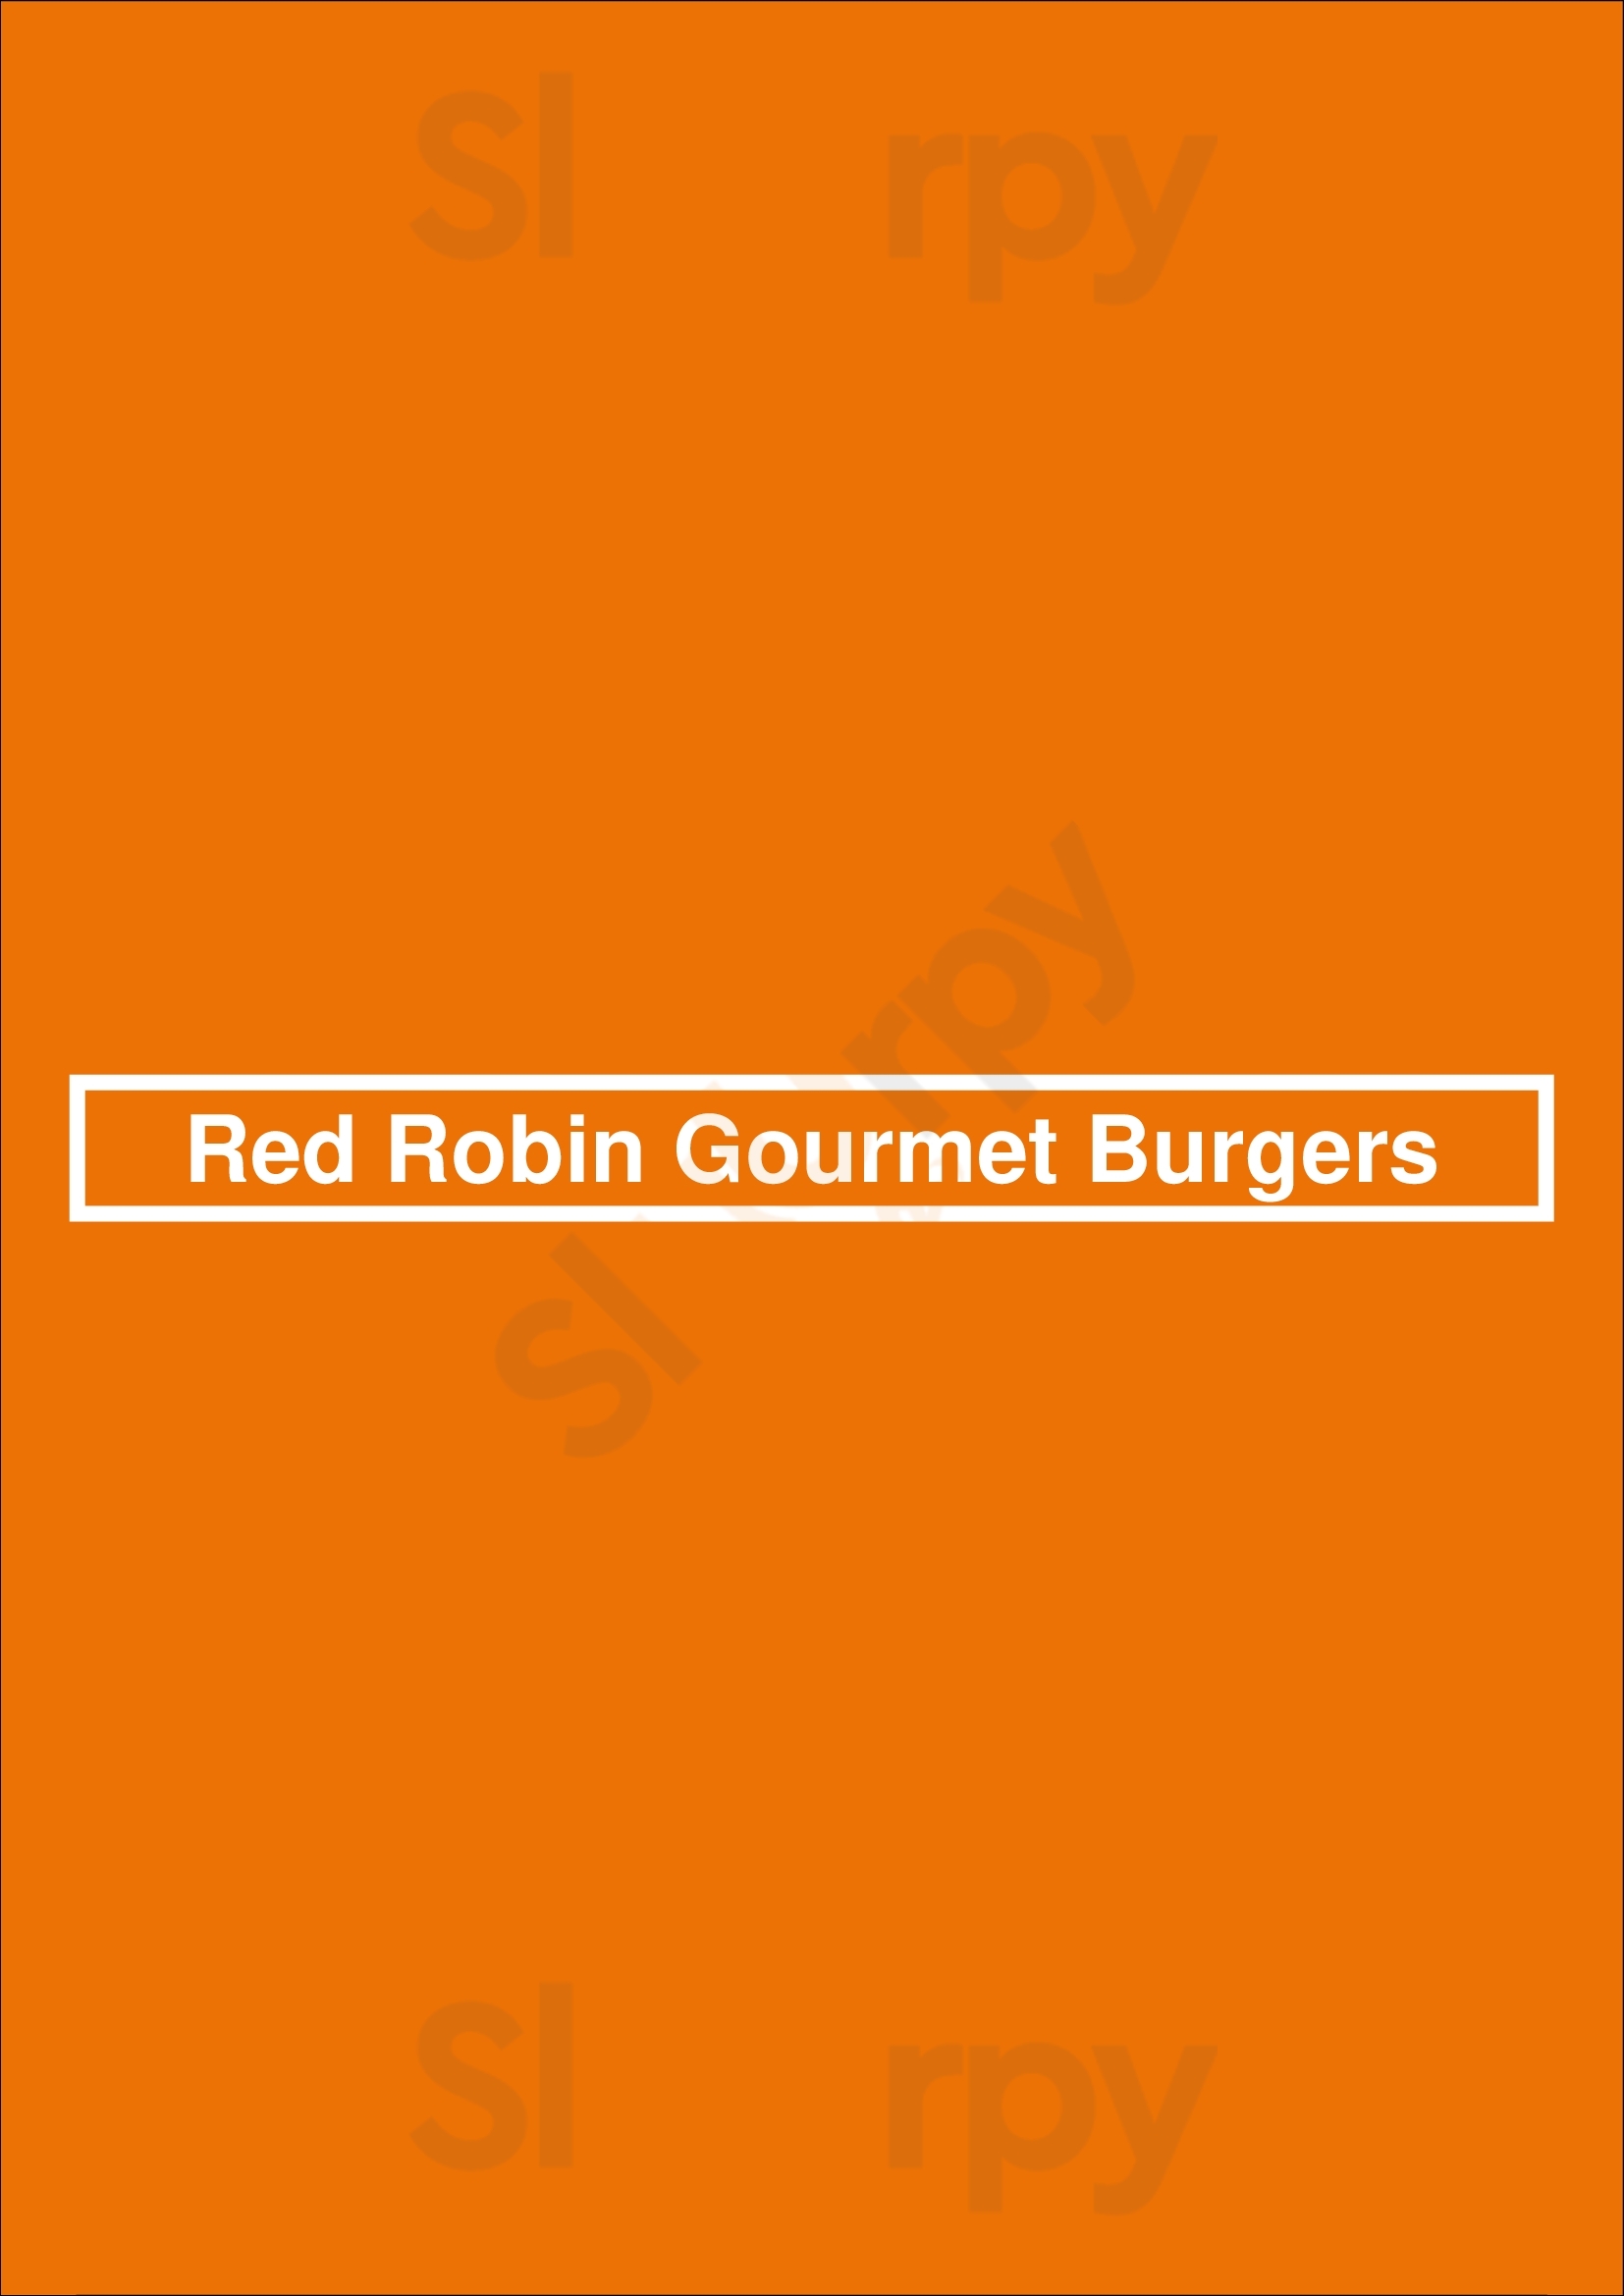 Red Robin Gourmet Burgers Braintree Menu - 1